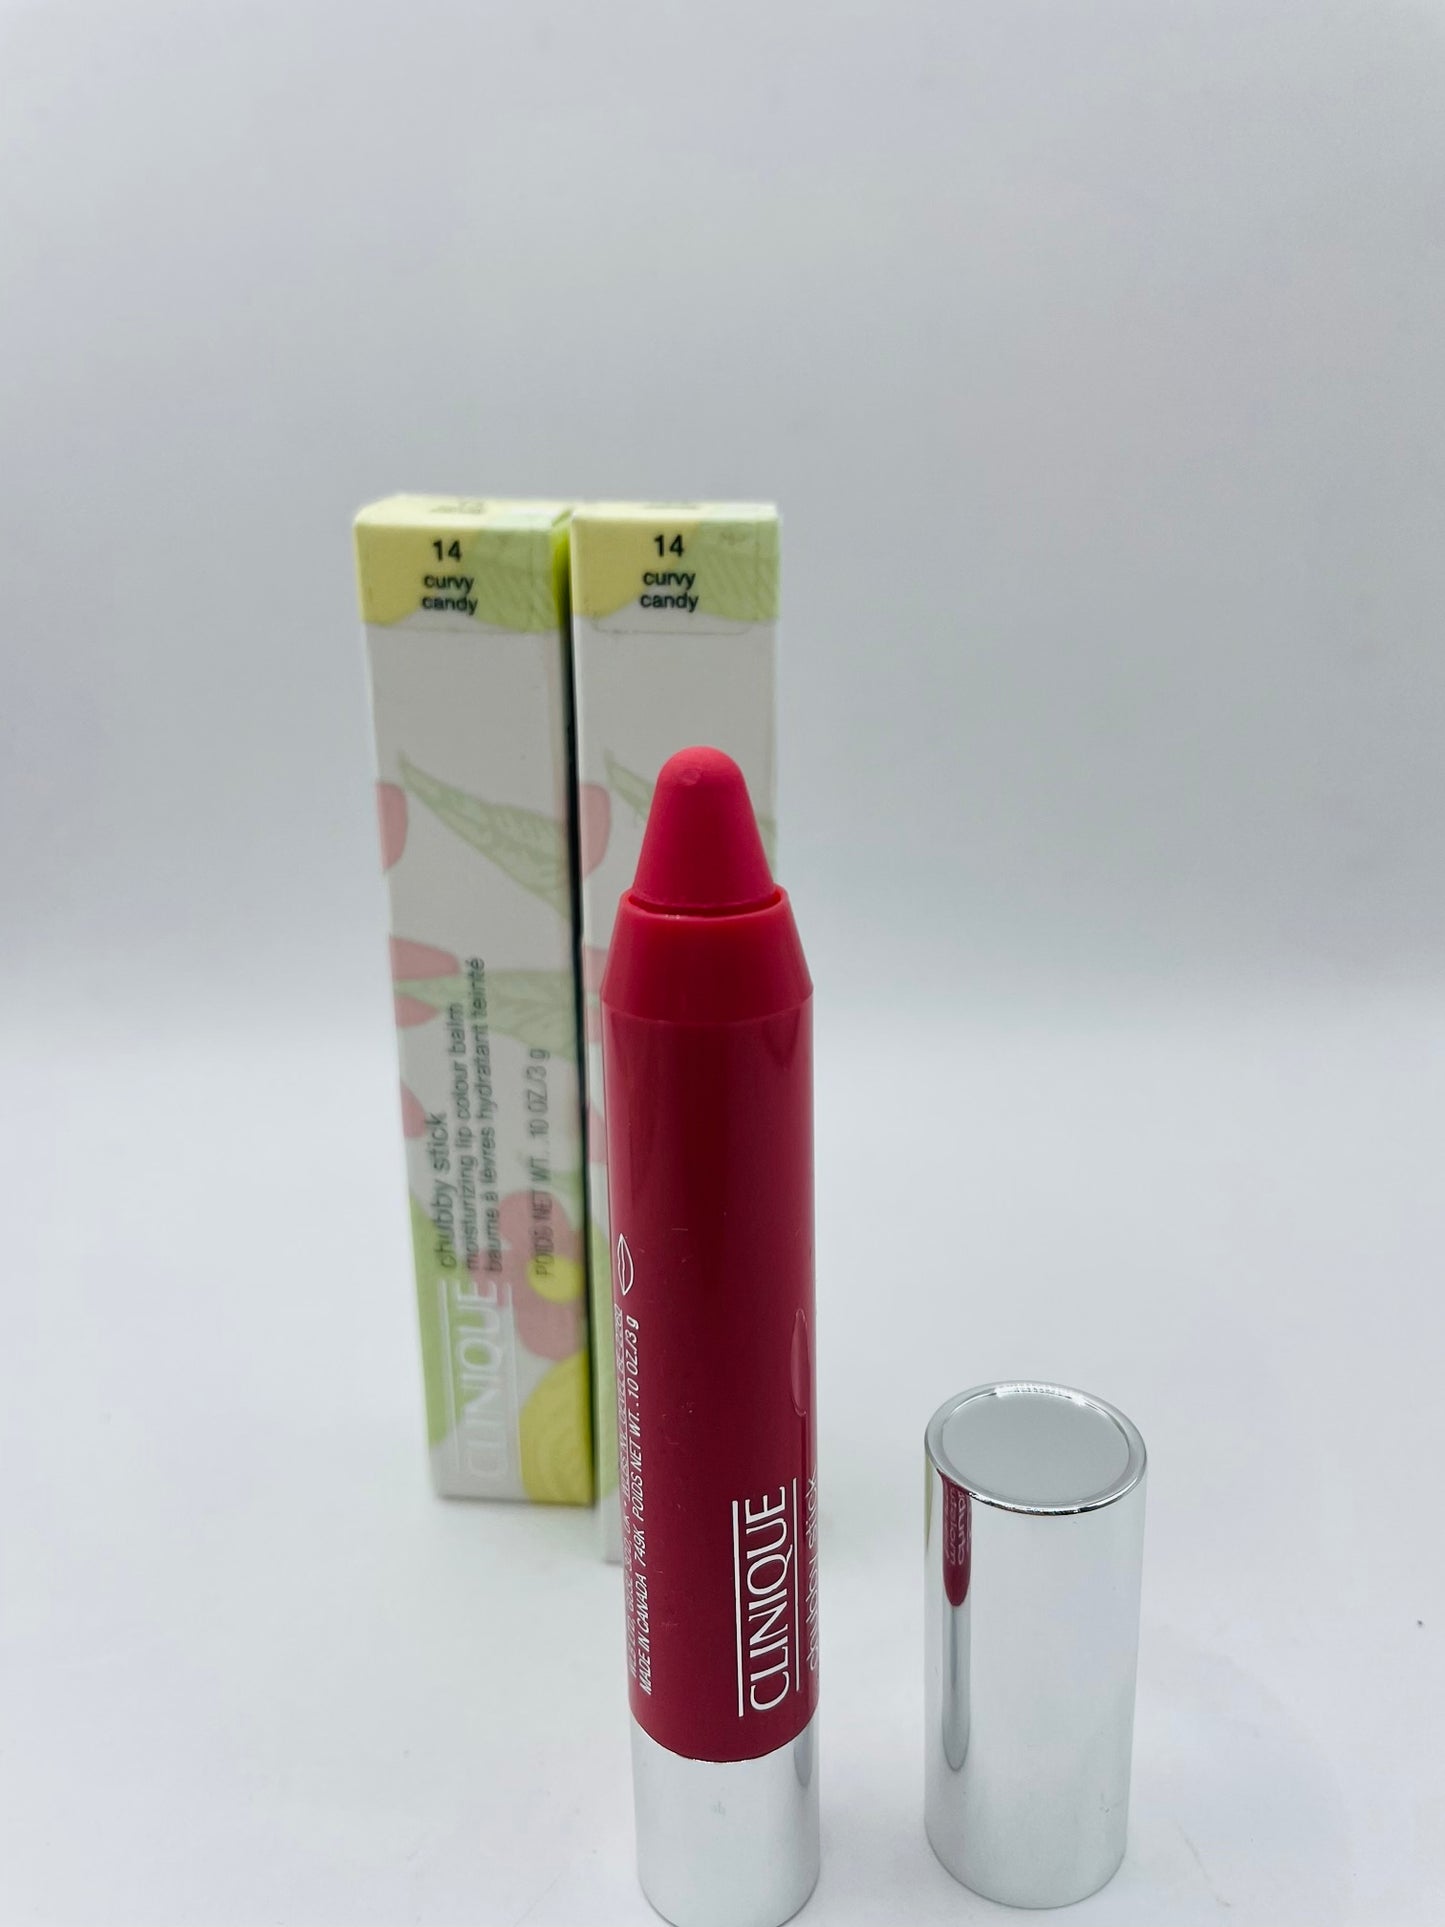 Clinique lipstick